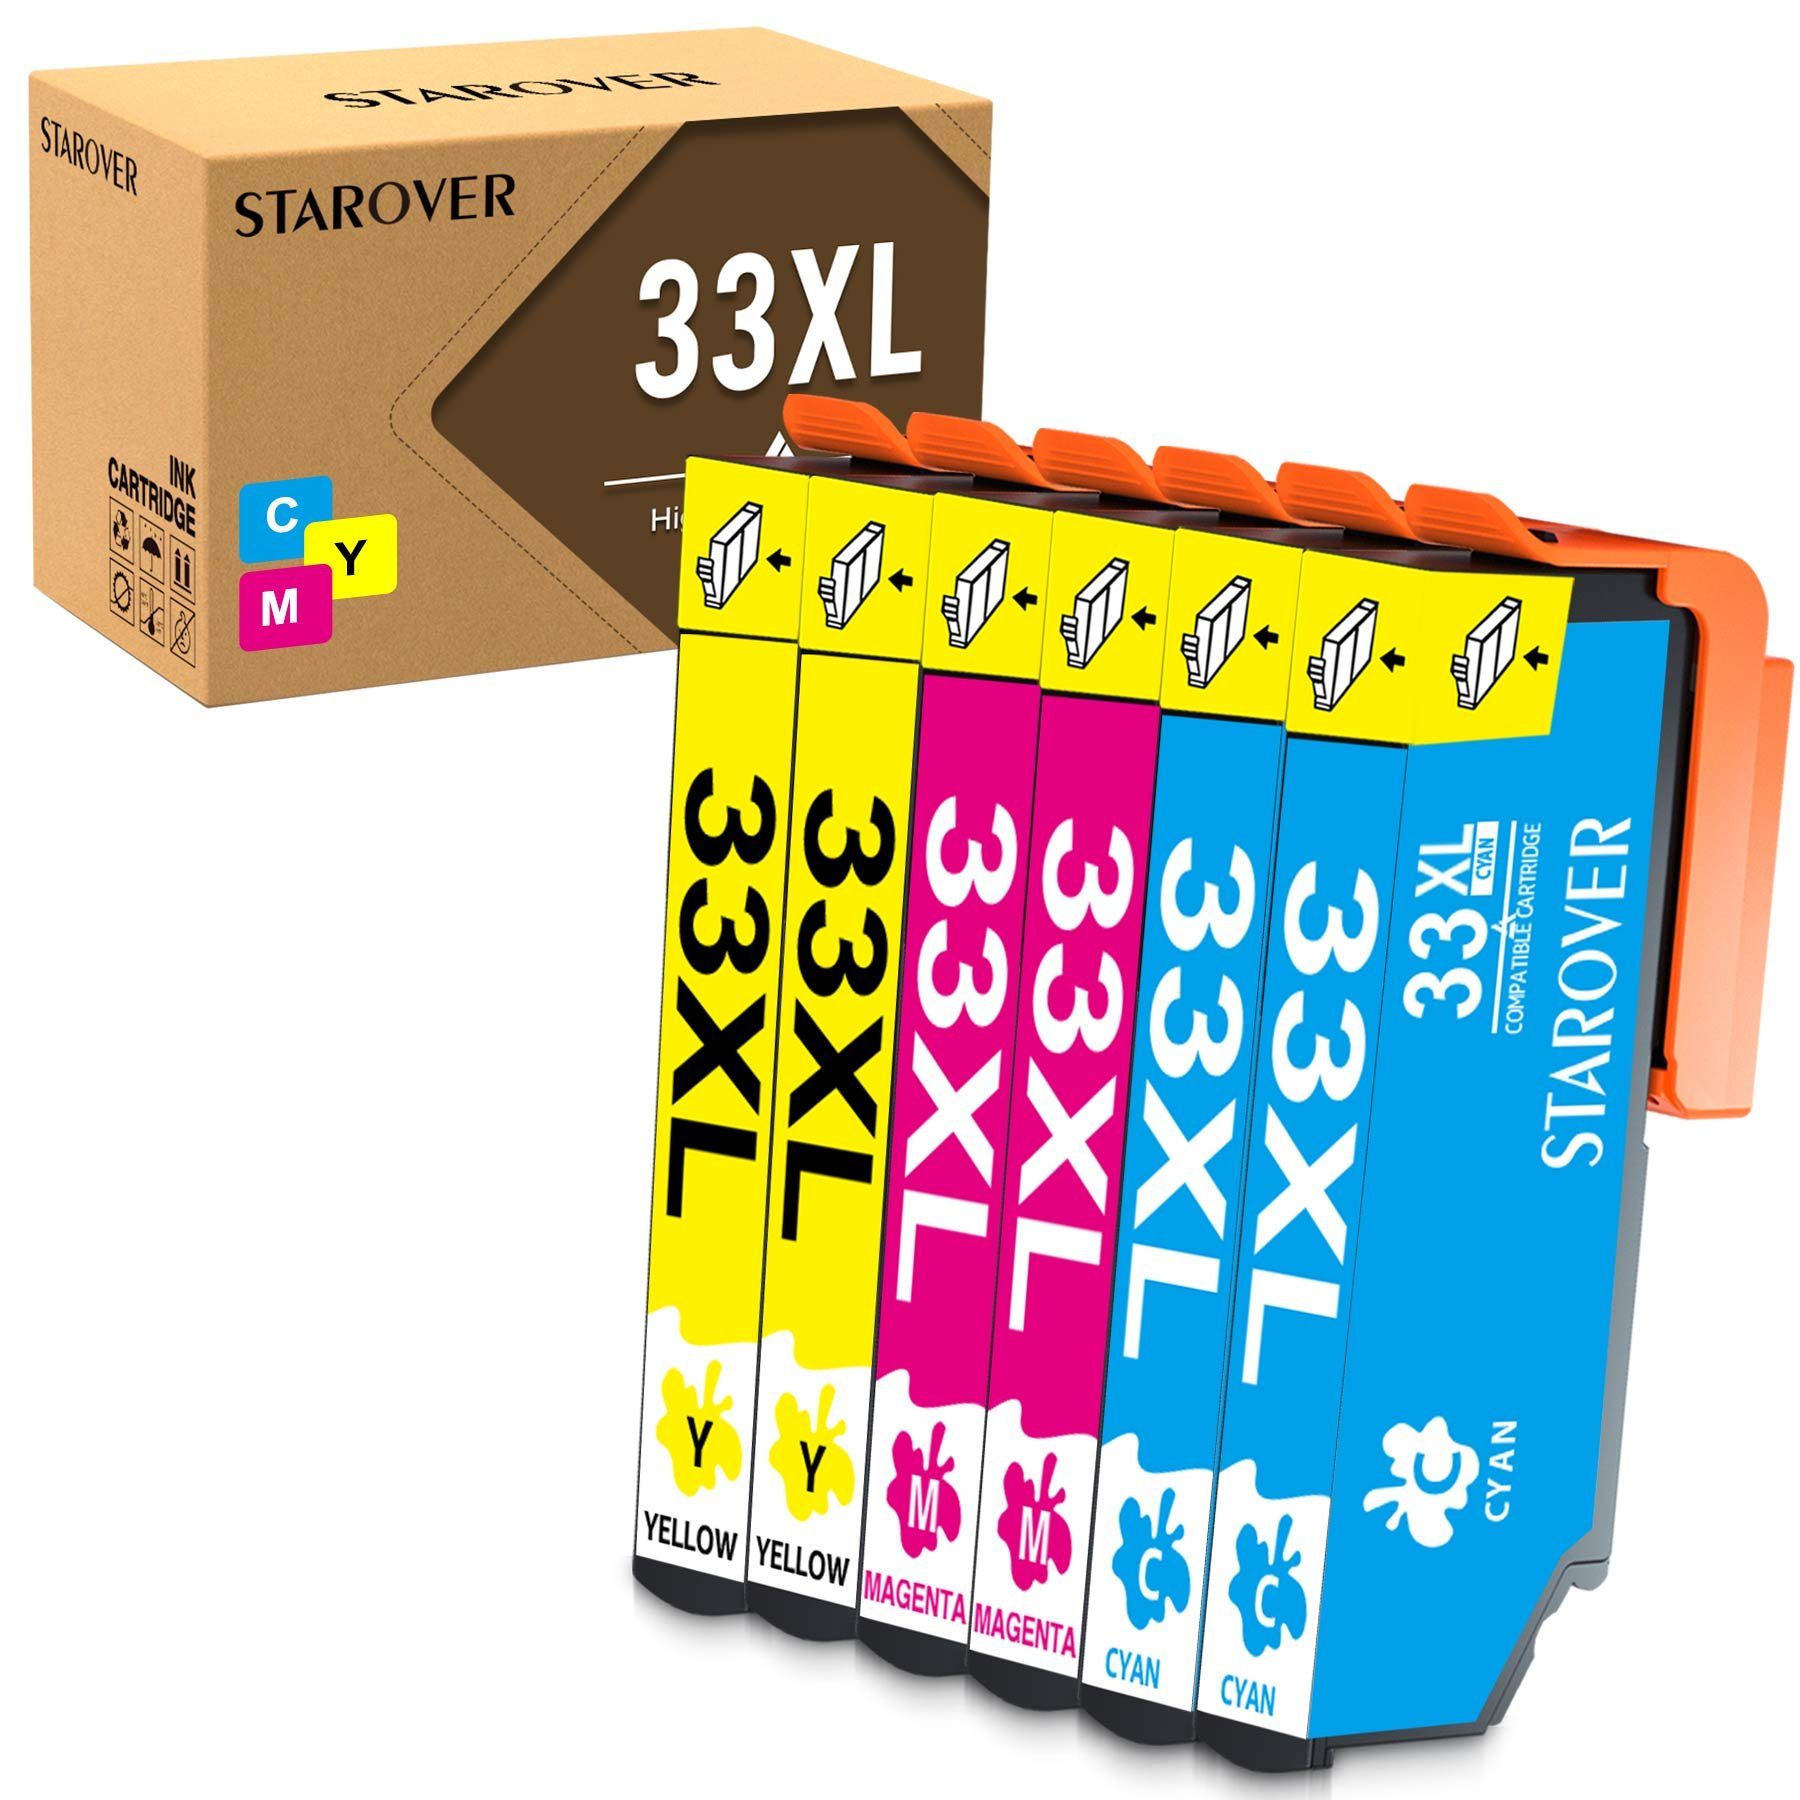 ONLYU Multipack für EPSON 33 XL Cyan,Magenta,Gelb Tintenpatrone (Expression Premium XP-530 XP-540 XP-630 XP-635 XP-640, XP-645 XP-7100 XP-830 XP-900 Serie Drucker) 2Cyan,2Magenta,2Gelb